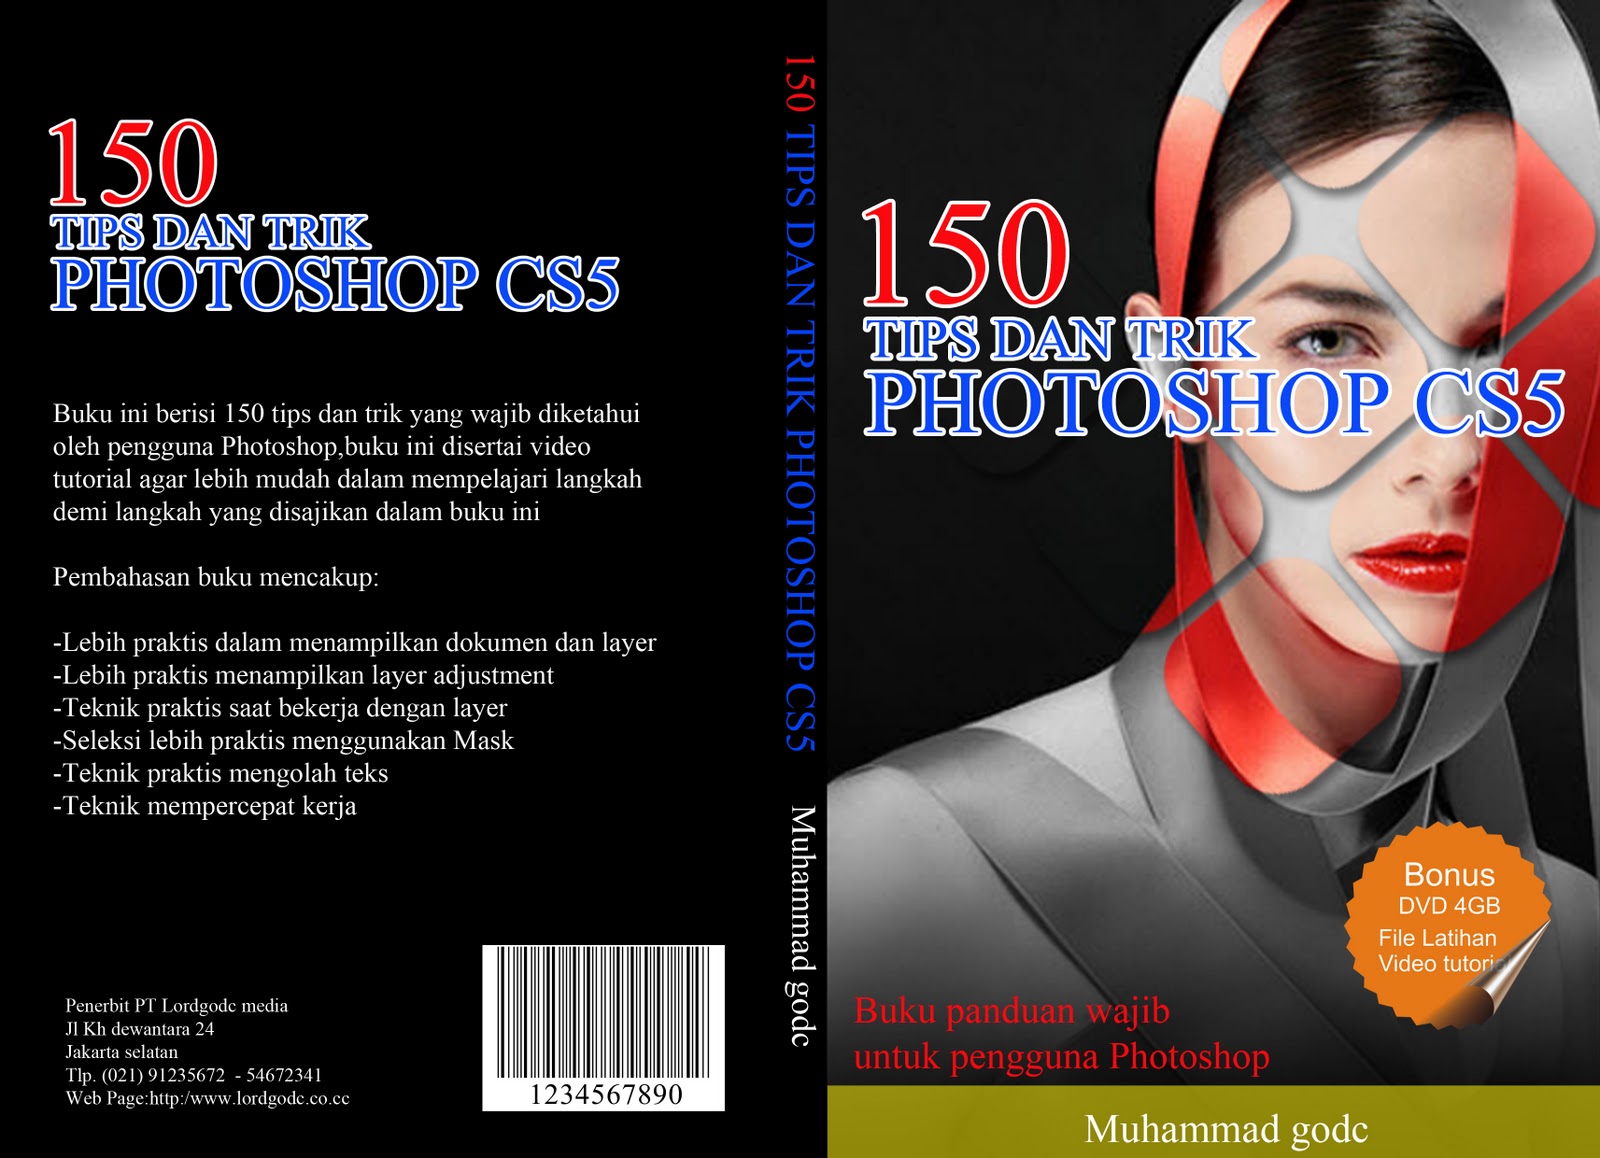  Desain  cover  buku  dengan Photoshop dan Corel draw  